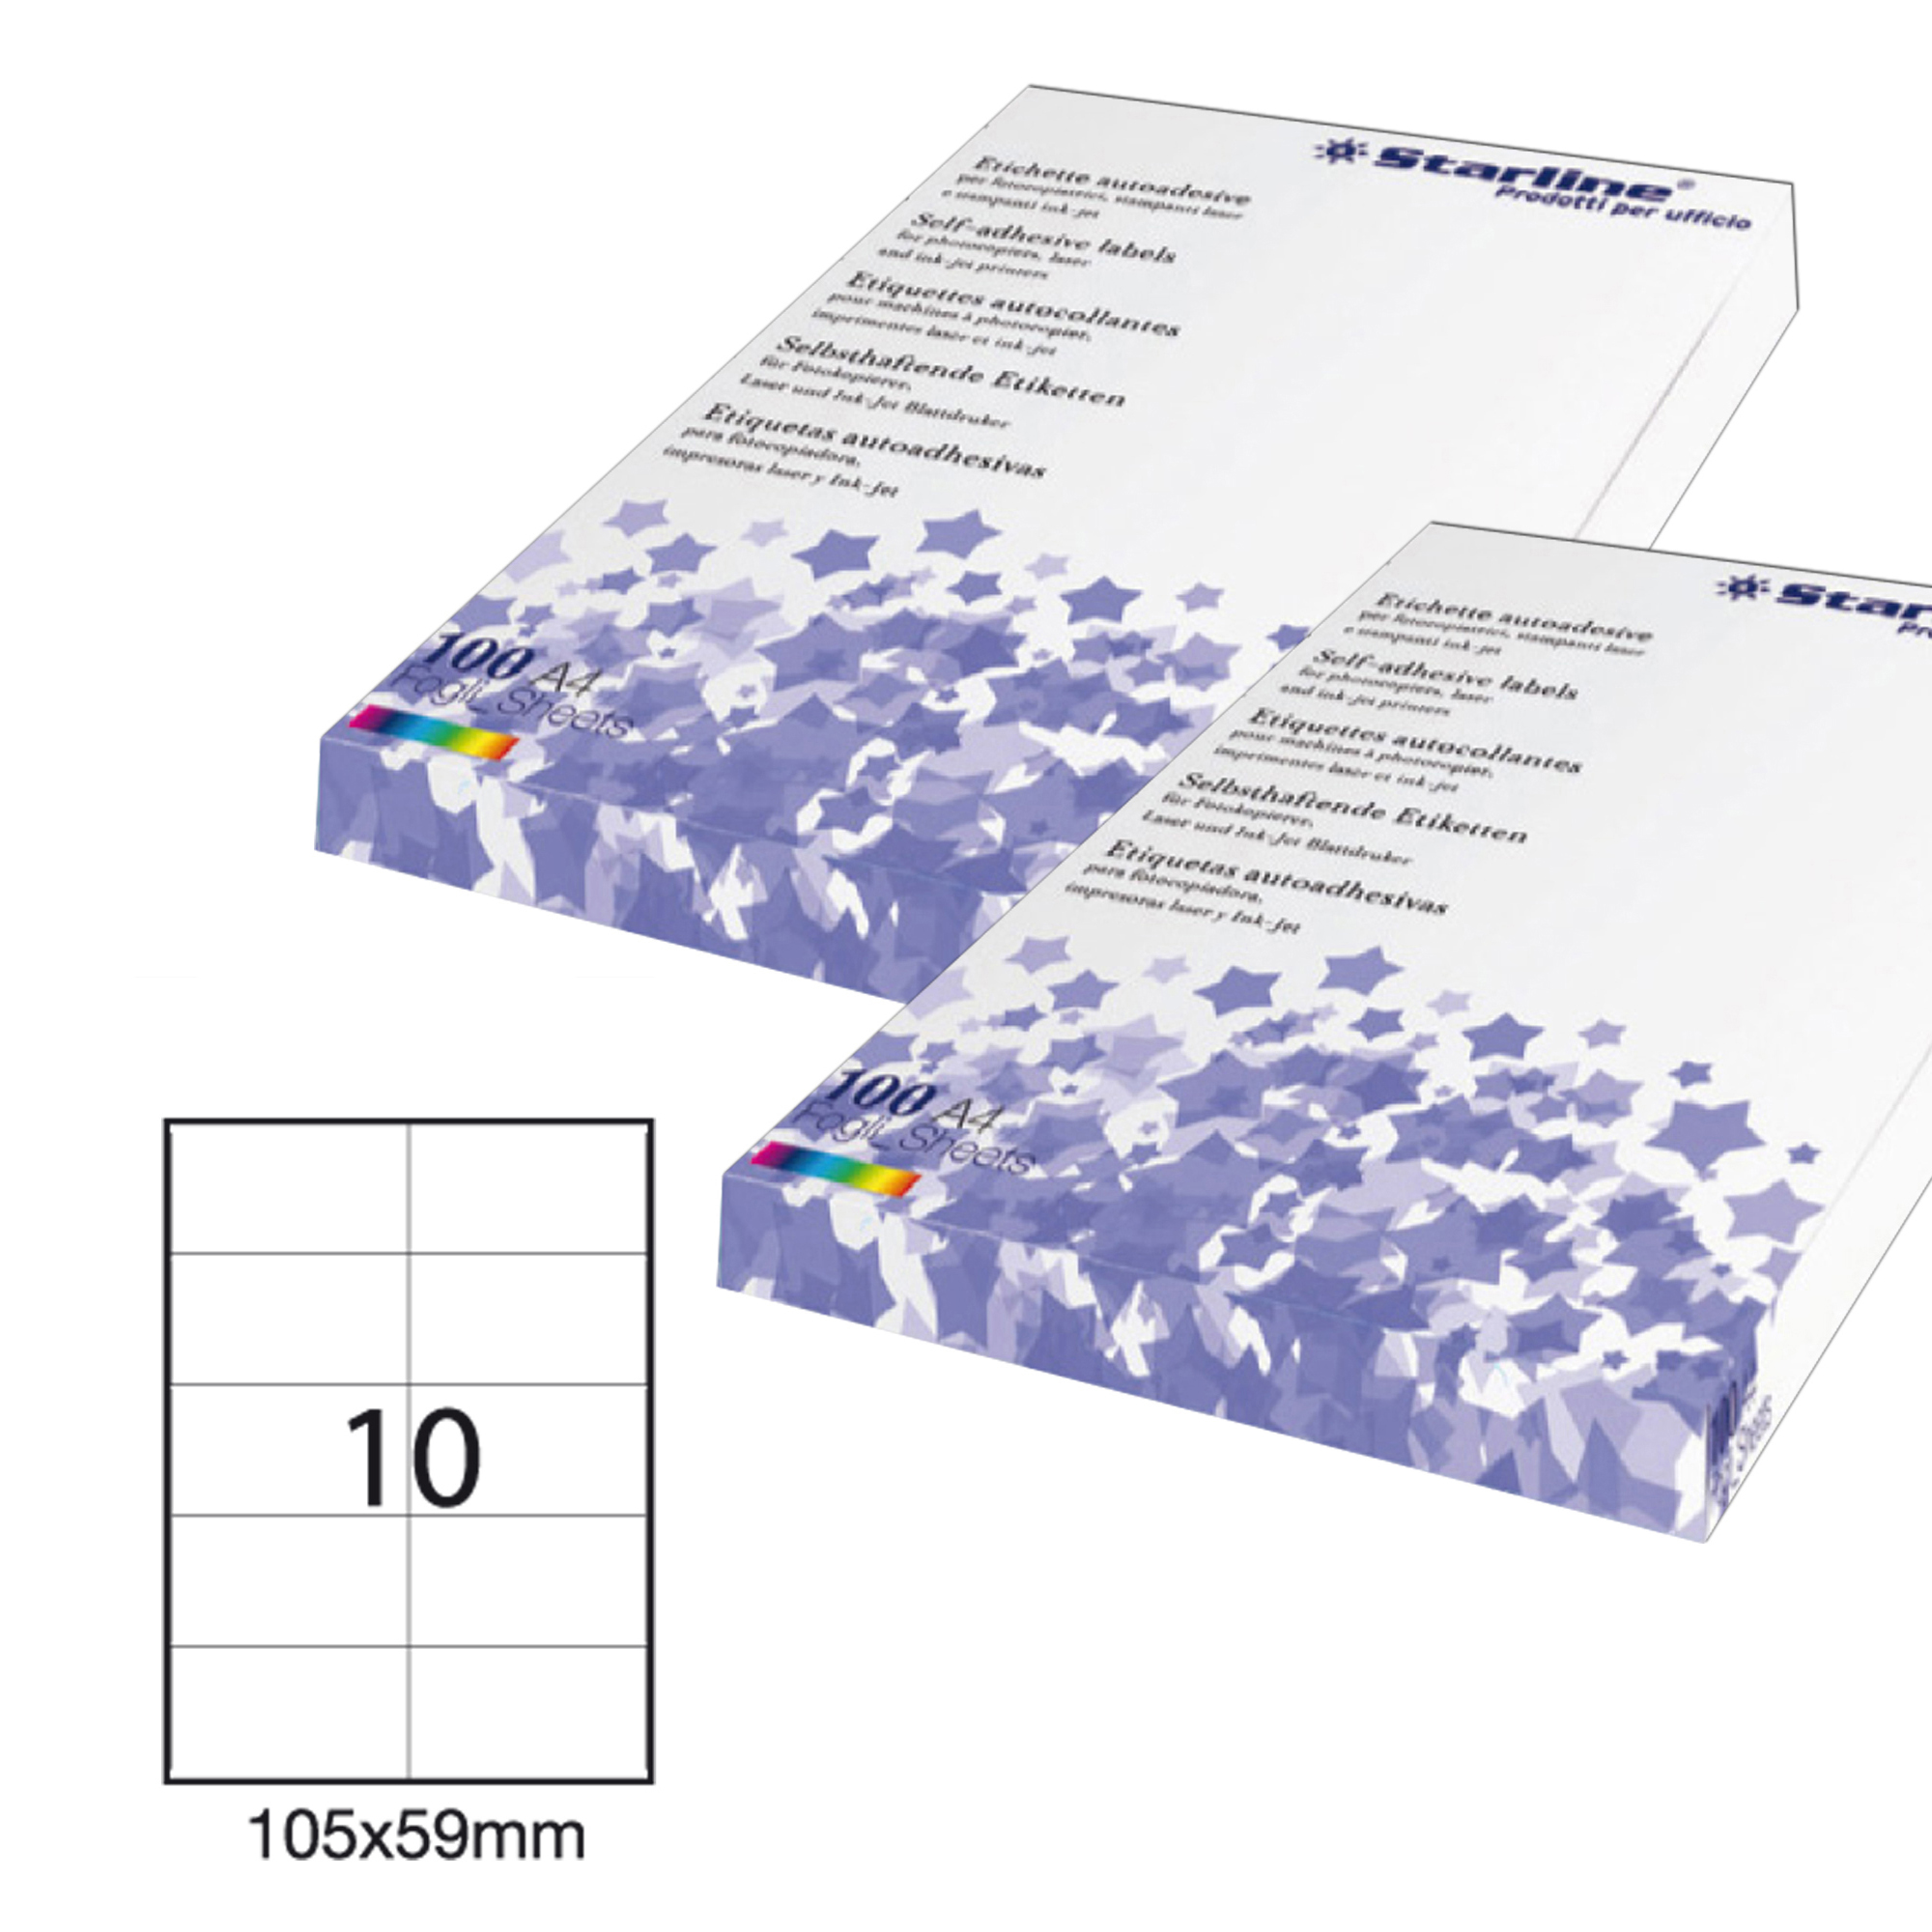 Etichetta adesiva - permanente - 105x59 mm - 10 etichette per foglio - bianco - Starline - conf. 100 fogli A4